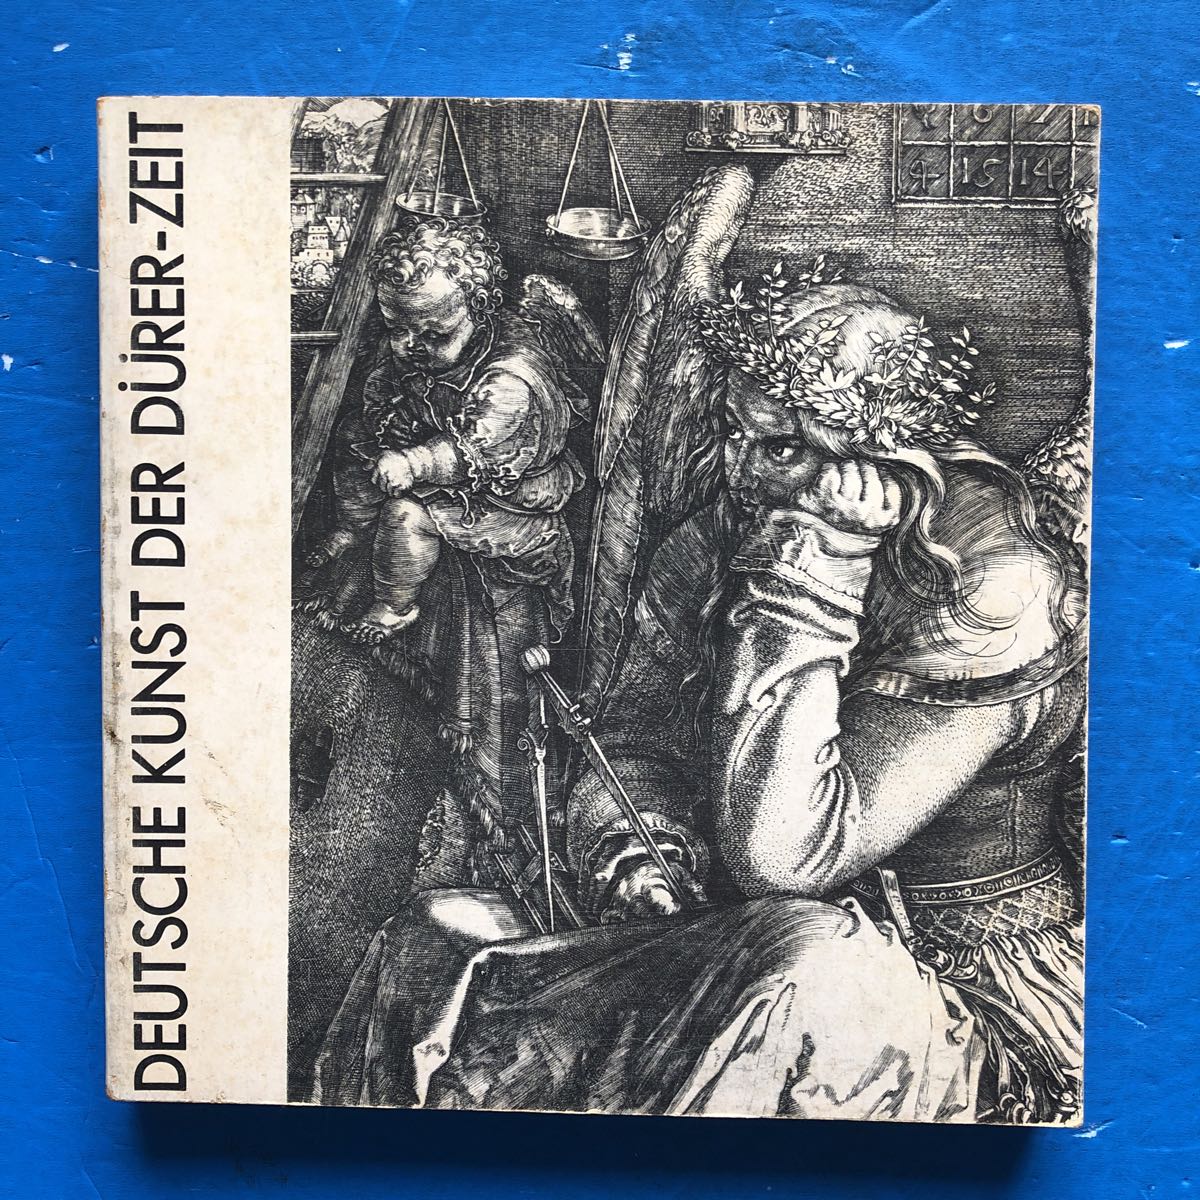 展覧会図録 デューラーとドイツ･ルネッサンス展 1972年, 絵画, 画集, 作品集, 図録